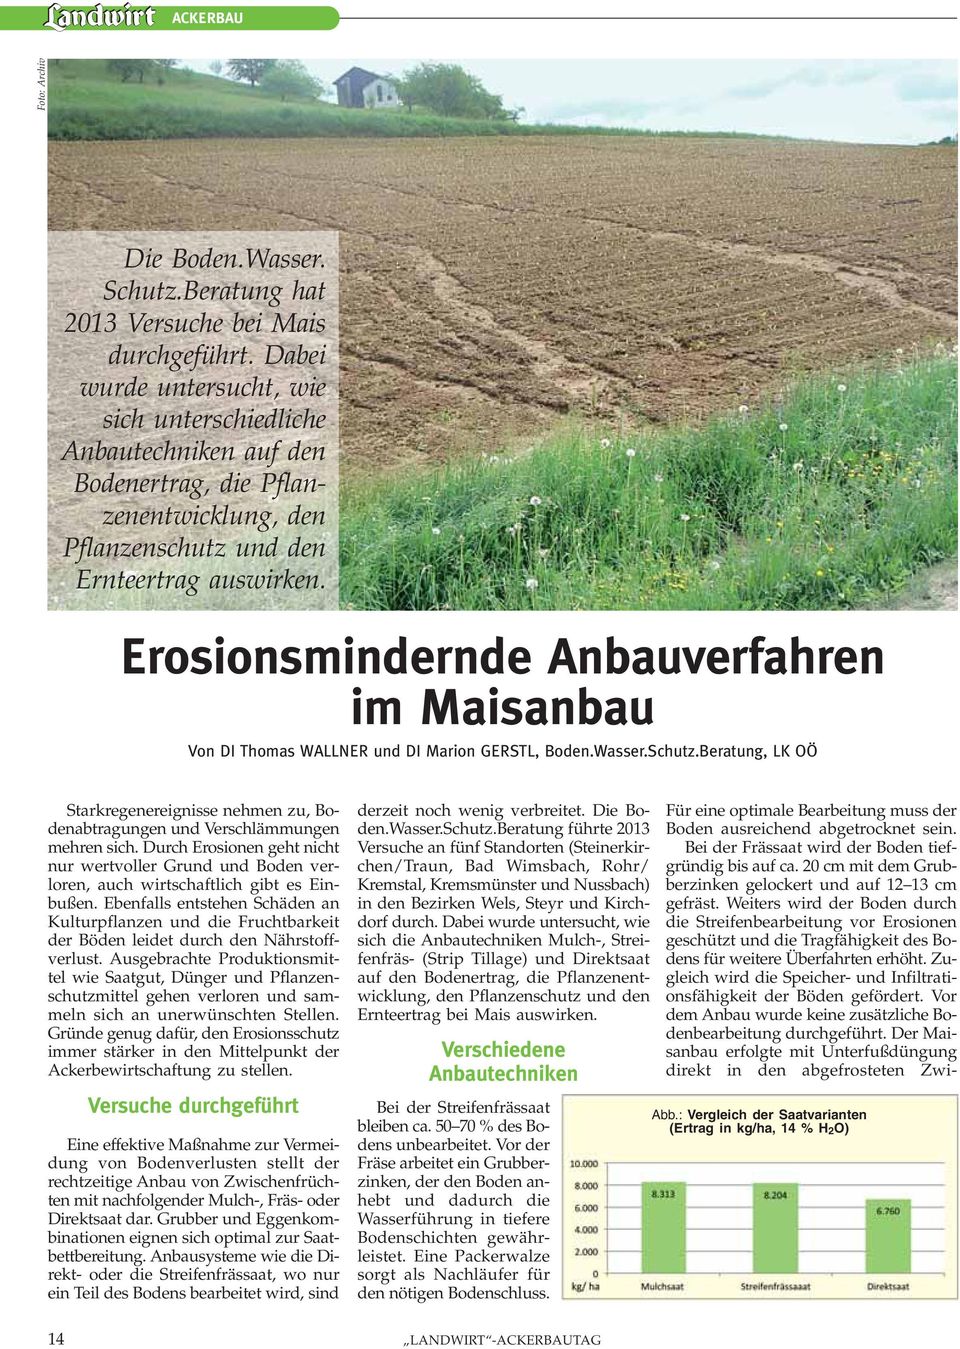 Erosionsmindernde Anbauverfahren im Maisanbau Von DI Thomas WALLNER und DI Marion GERSTL, Boden.Wasser.Schutz.